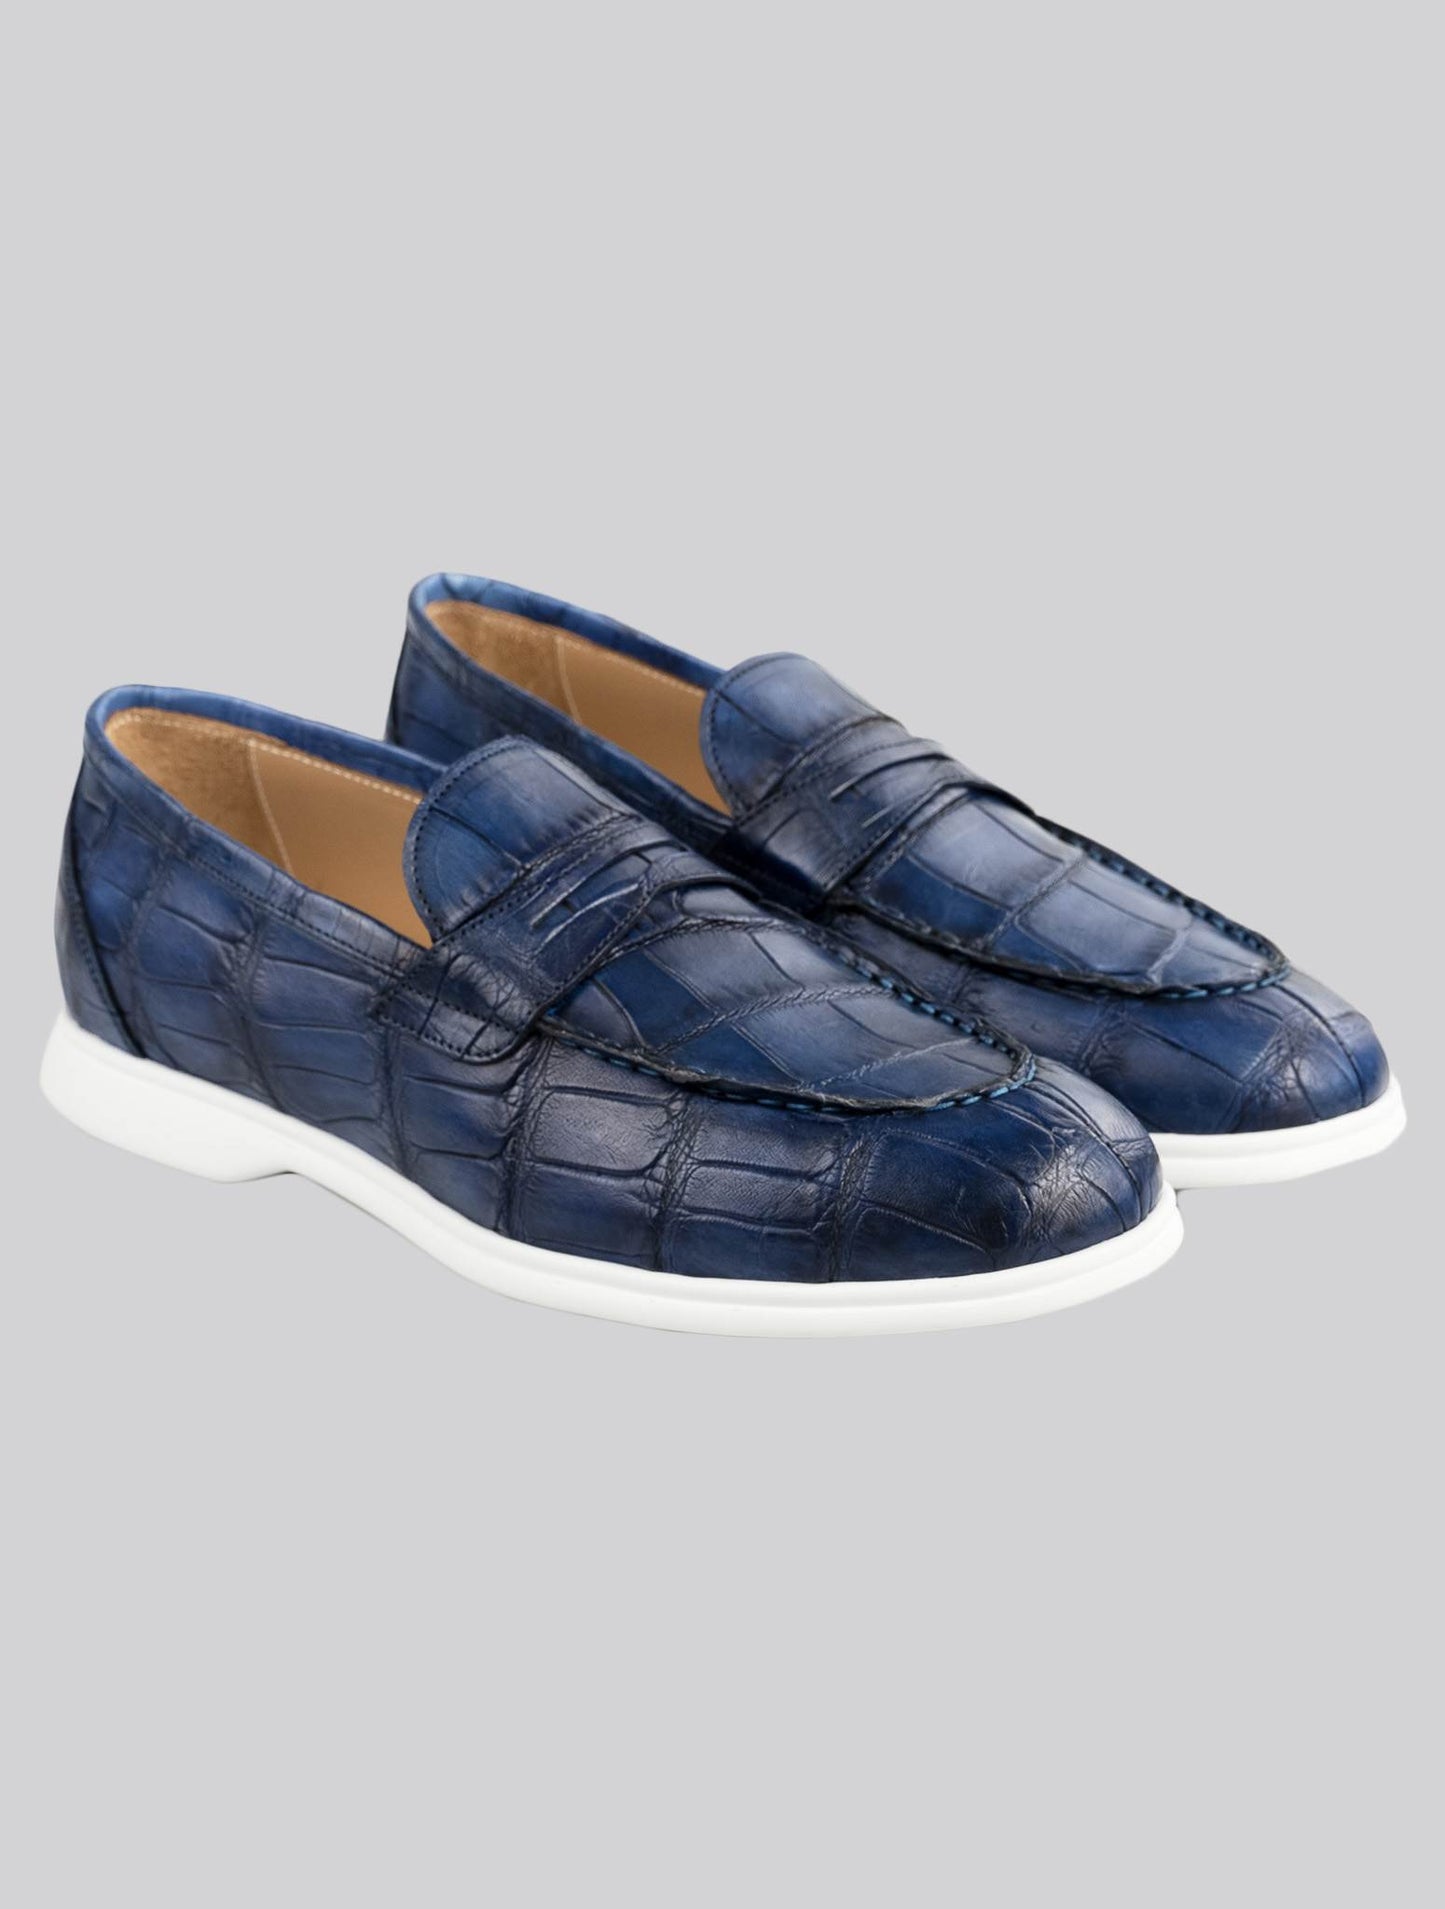 Kiton Blue Leather Crocodile Loafers